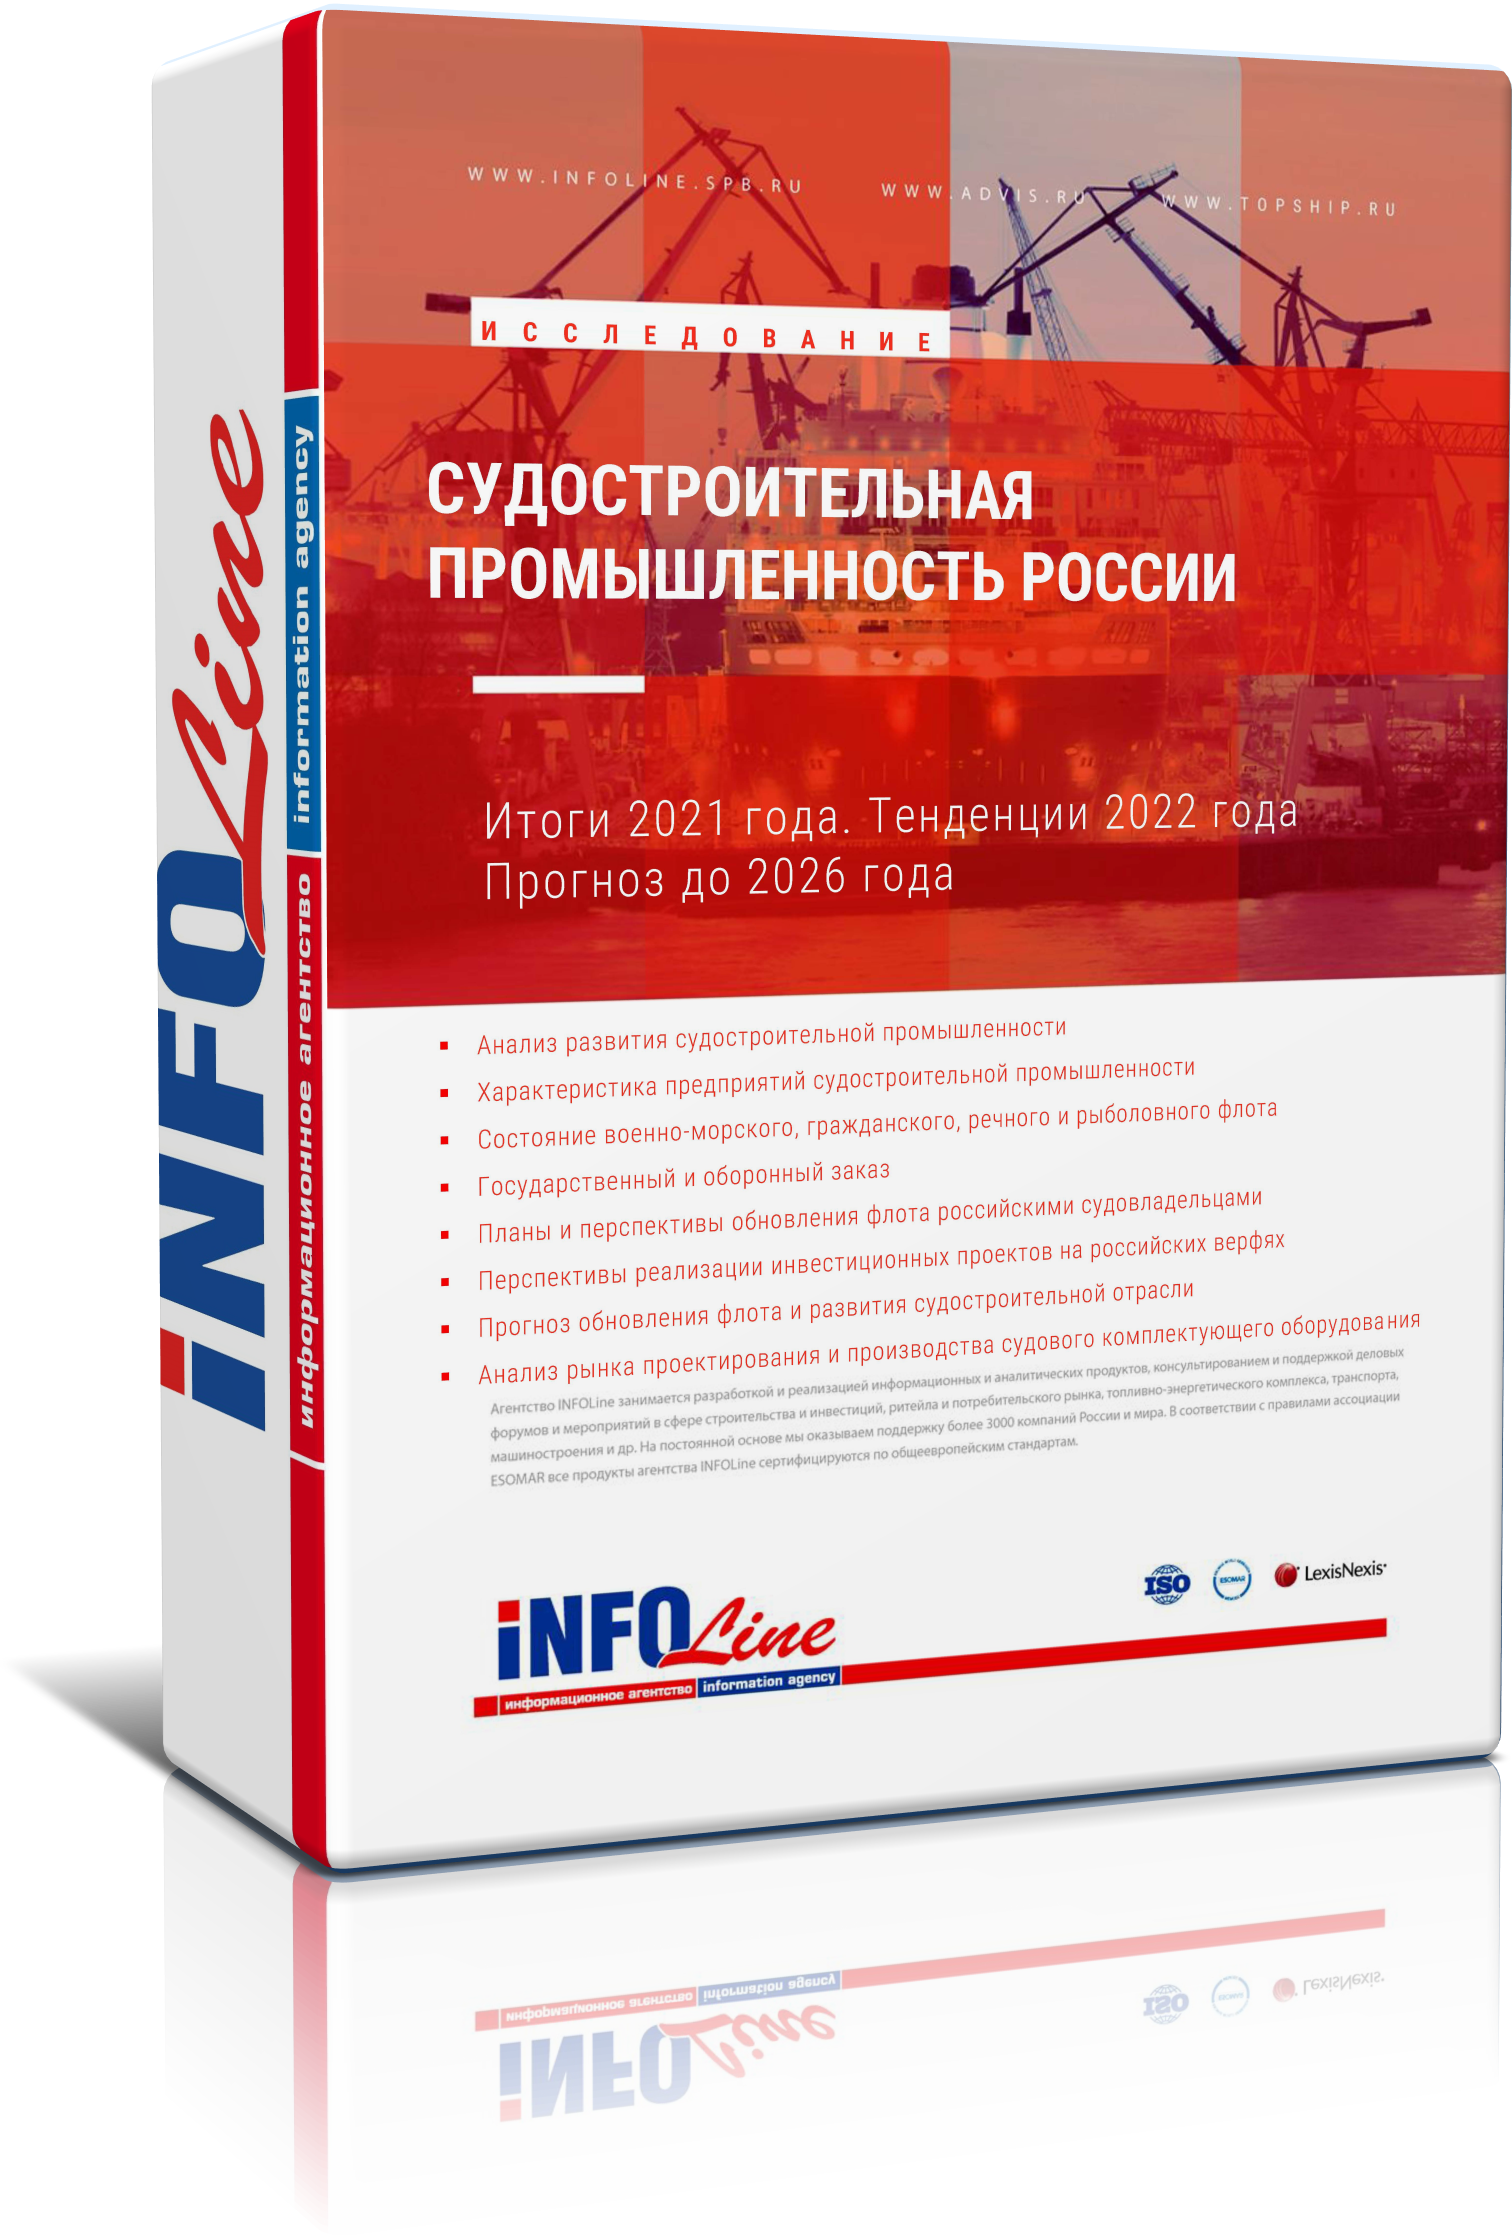 Исследование "Судостроительная промышленность России. Итоги 2021 года.(Доступна обновленная версия)"